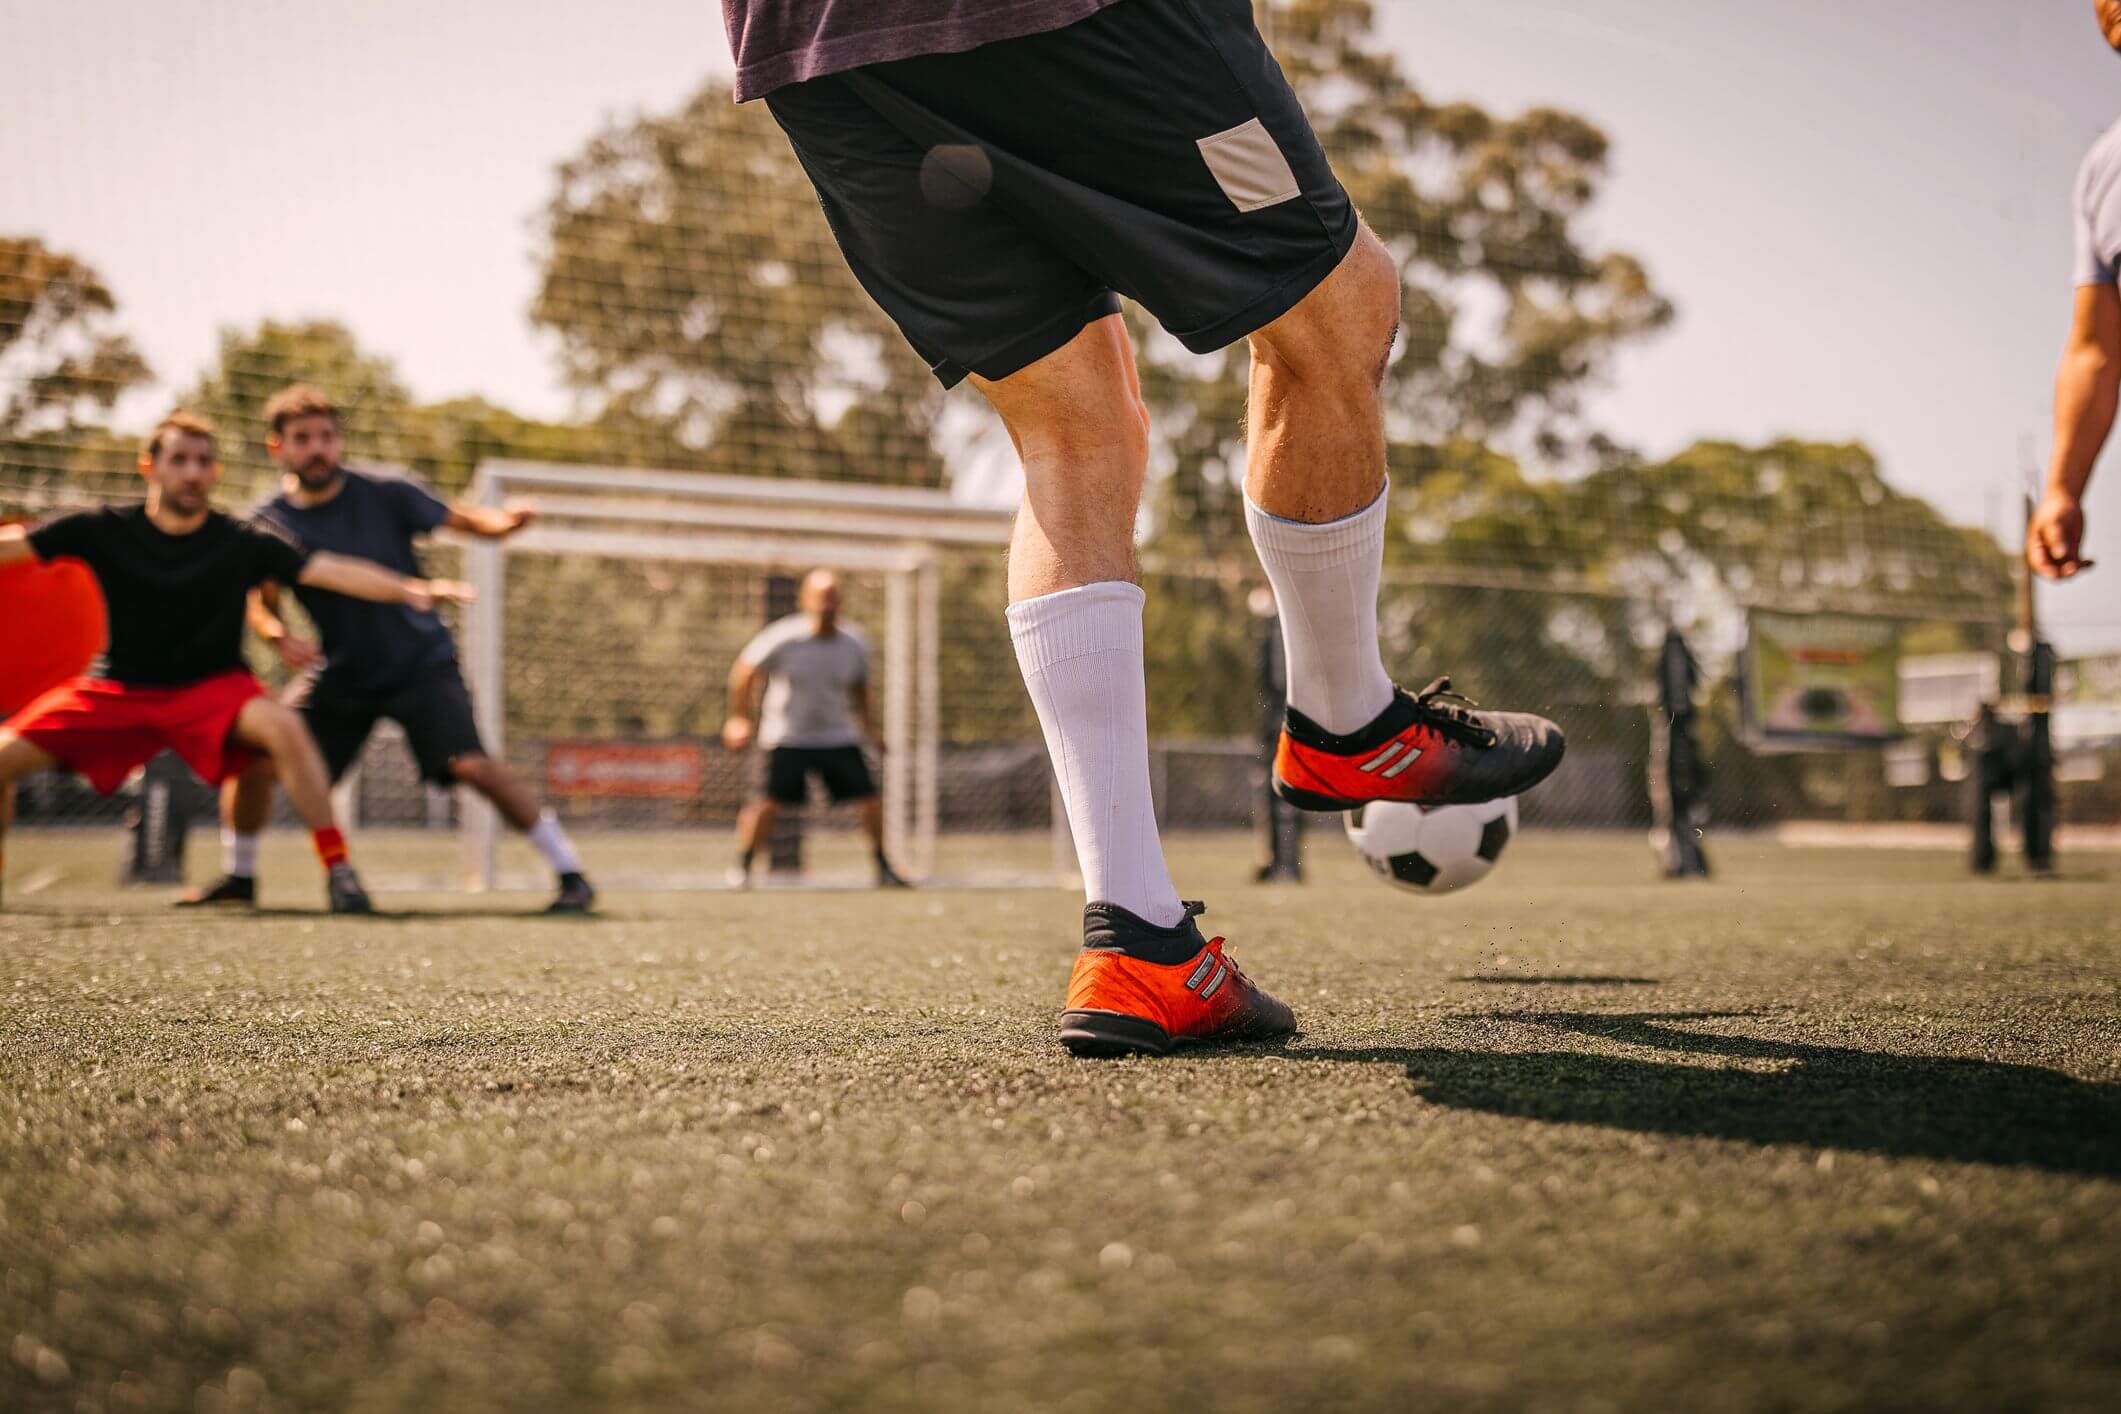 Usipa - Aquele jogo informal com os amigos e os treinos de alto rendimento  oferecem diferentes benefícios para a sua saúde. Você sabe como o Futebol  pode melhorar sua saúde e bem-estar?